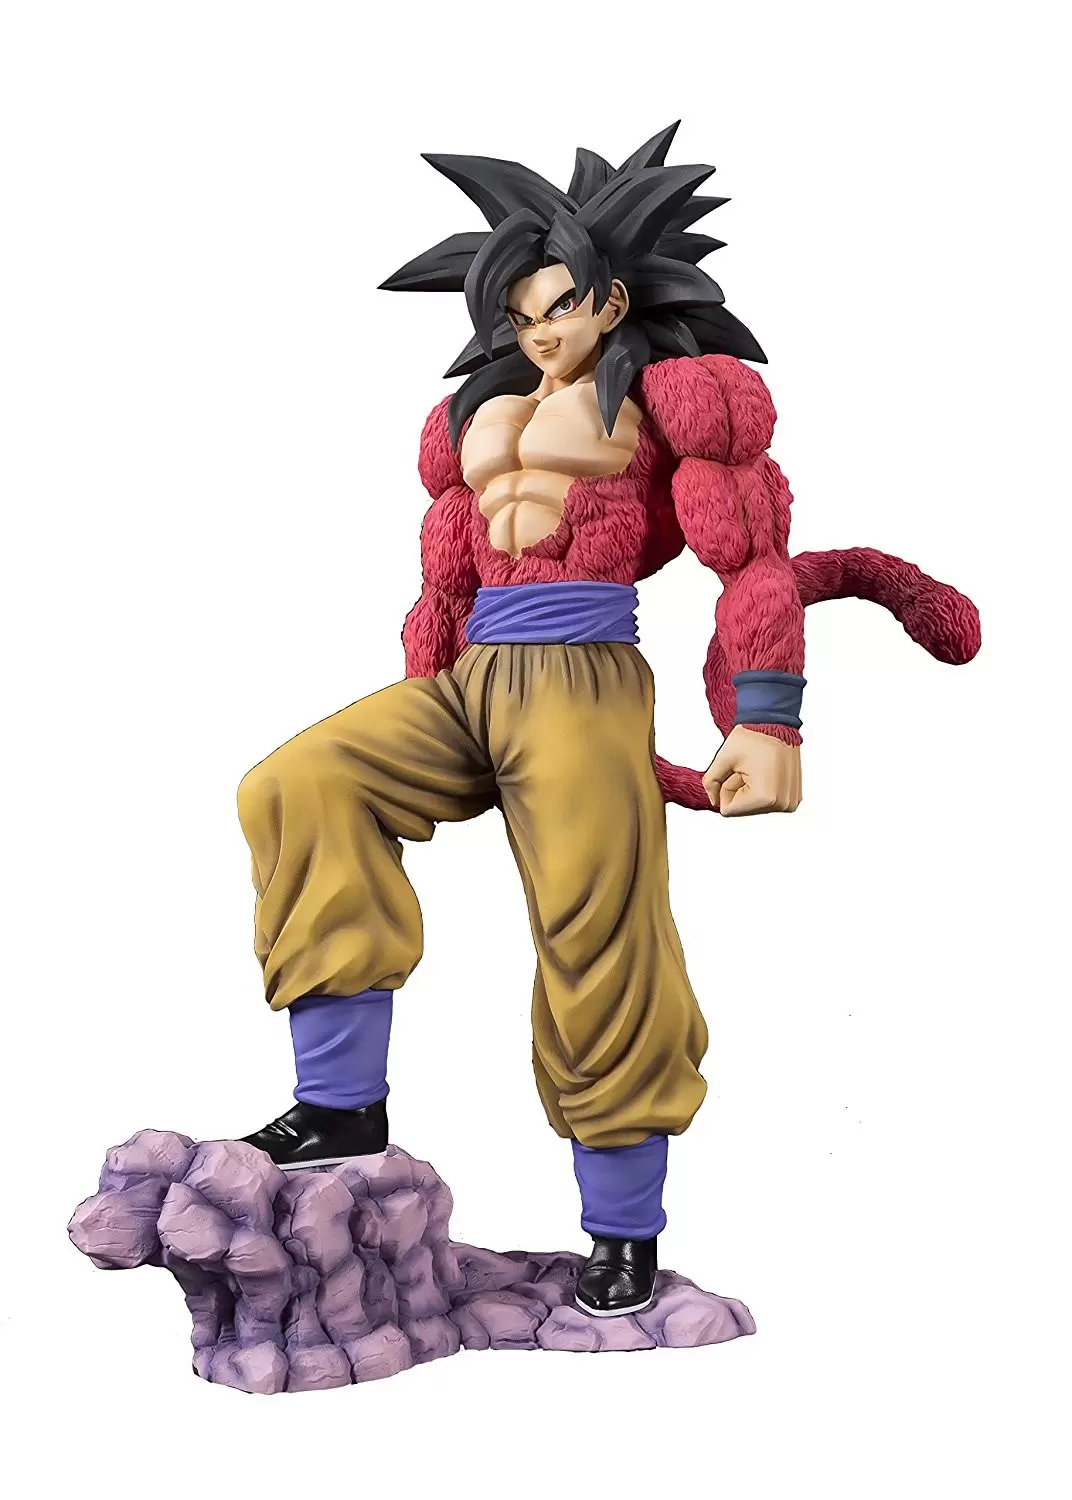 Goku,Super saiyan , HD, UHD, HDR, Highly detailed, h, saiyajin ou sayajin 